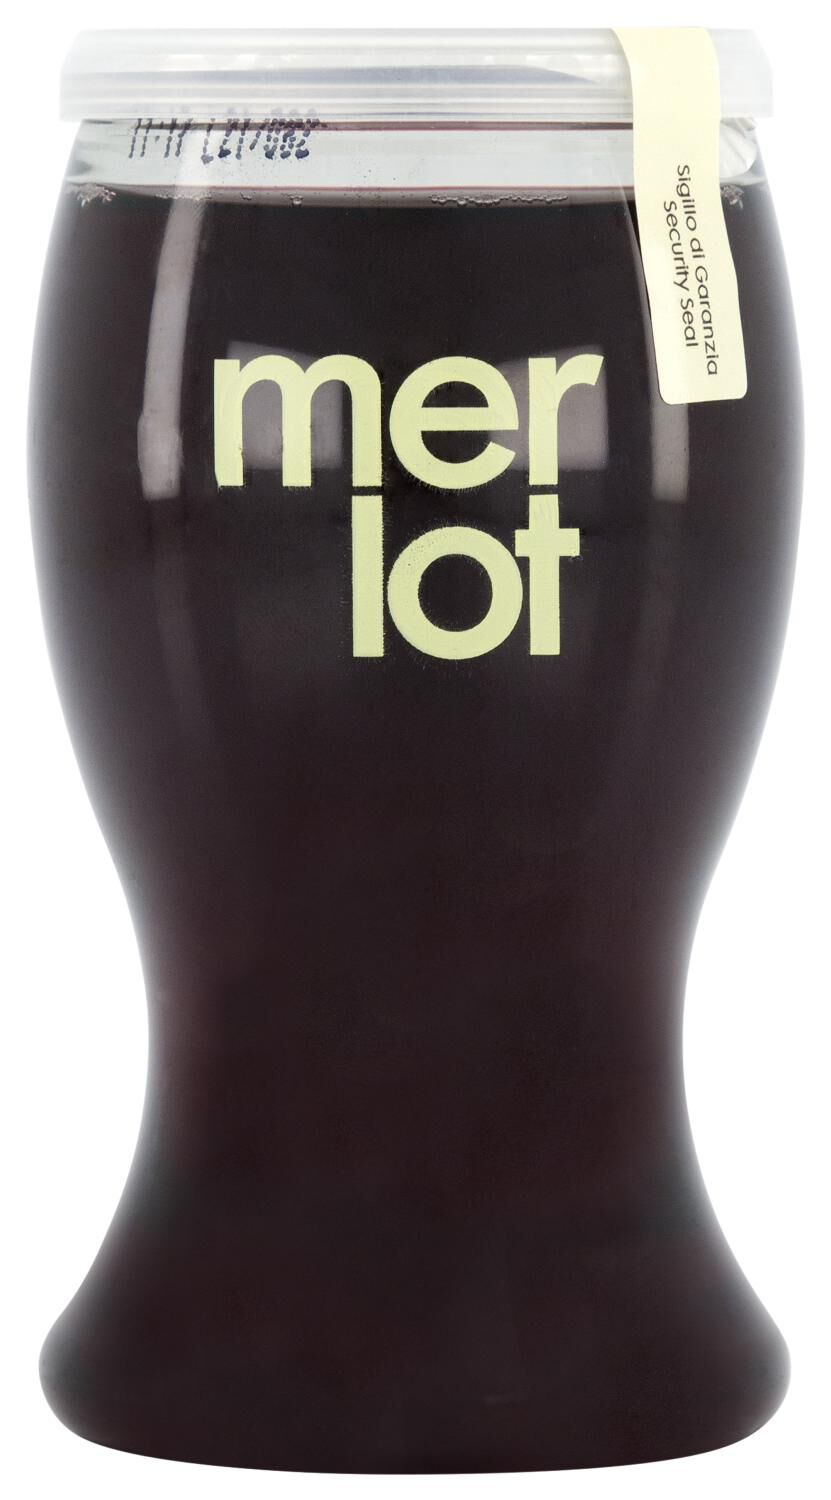 HEMA Wine In Cup Merlot 187ml kopen?